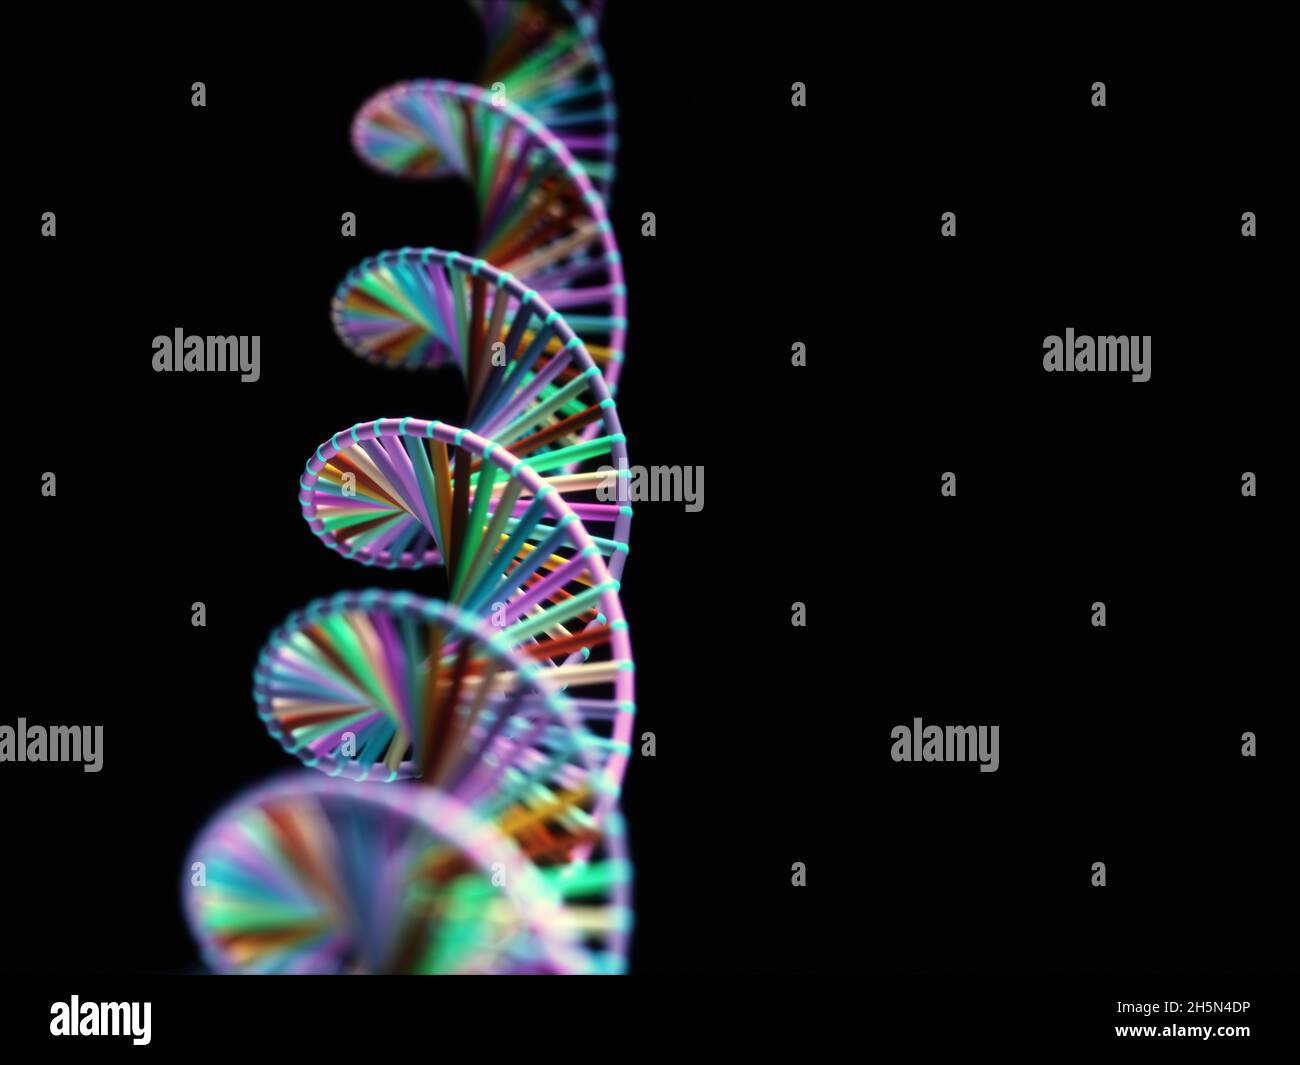 Imagen abstracta de los códigos genéticos ADN. Imagen conceptual para usar como fondo. Ilustración 3D. Foto de stock